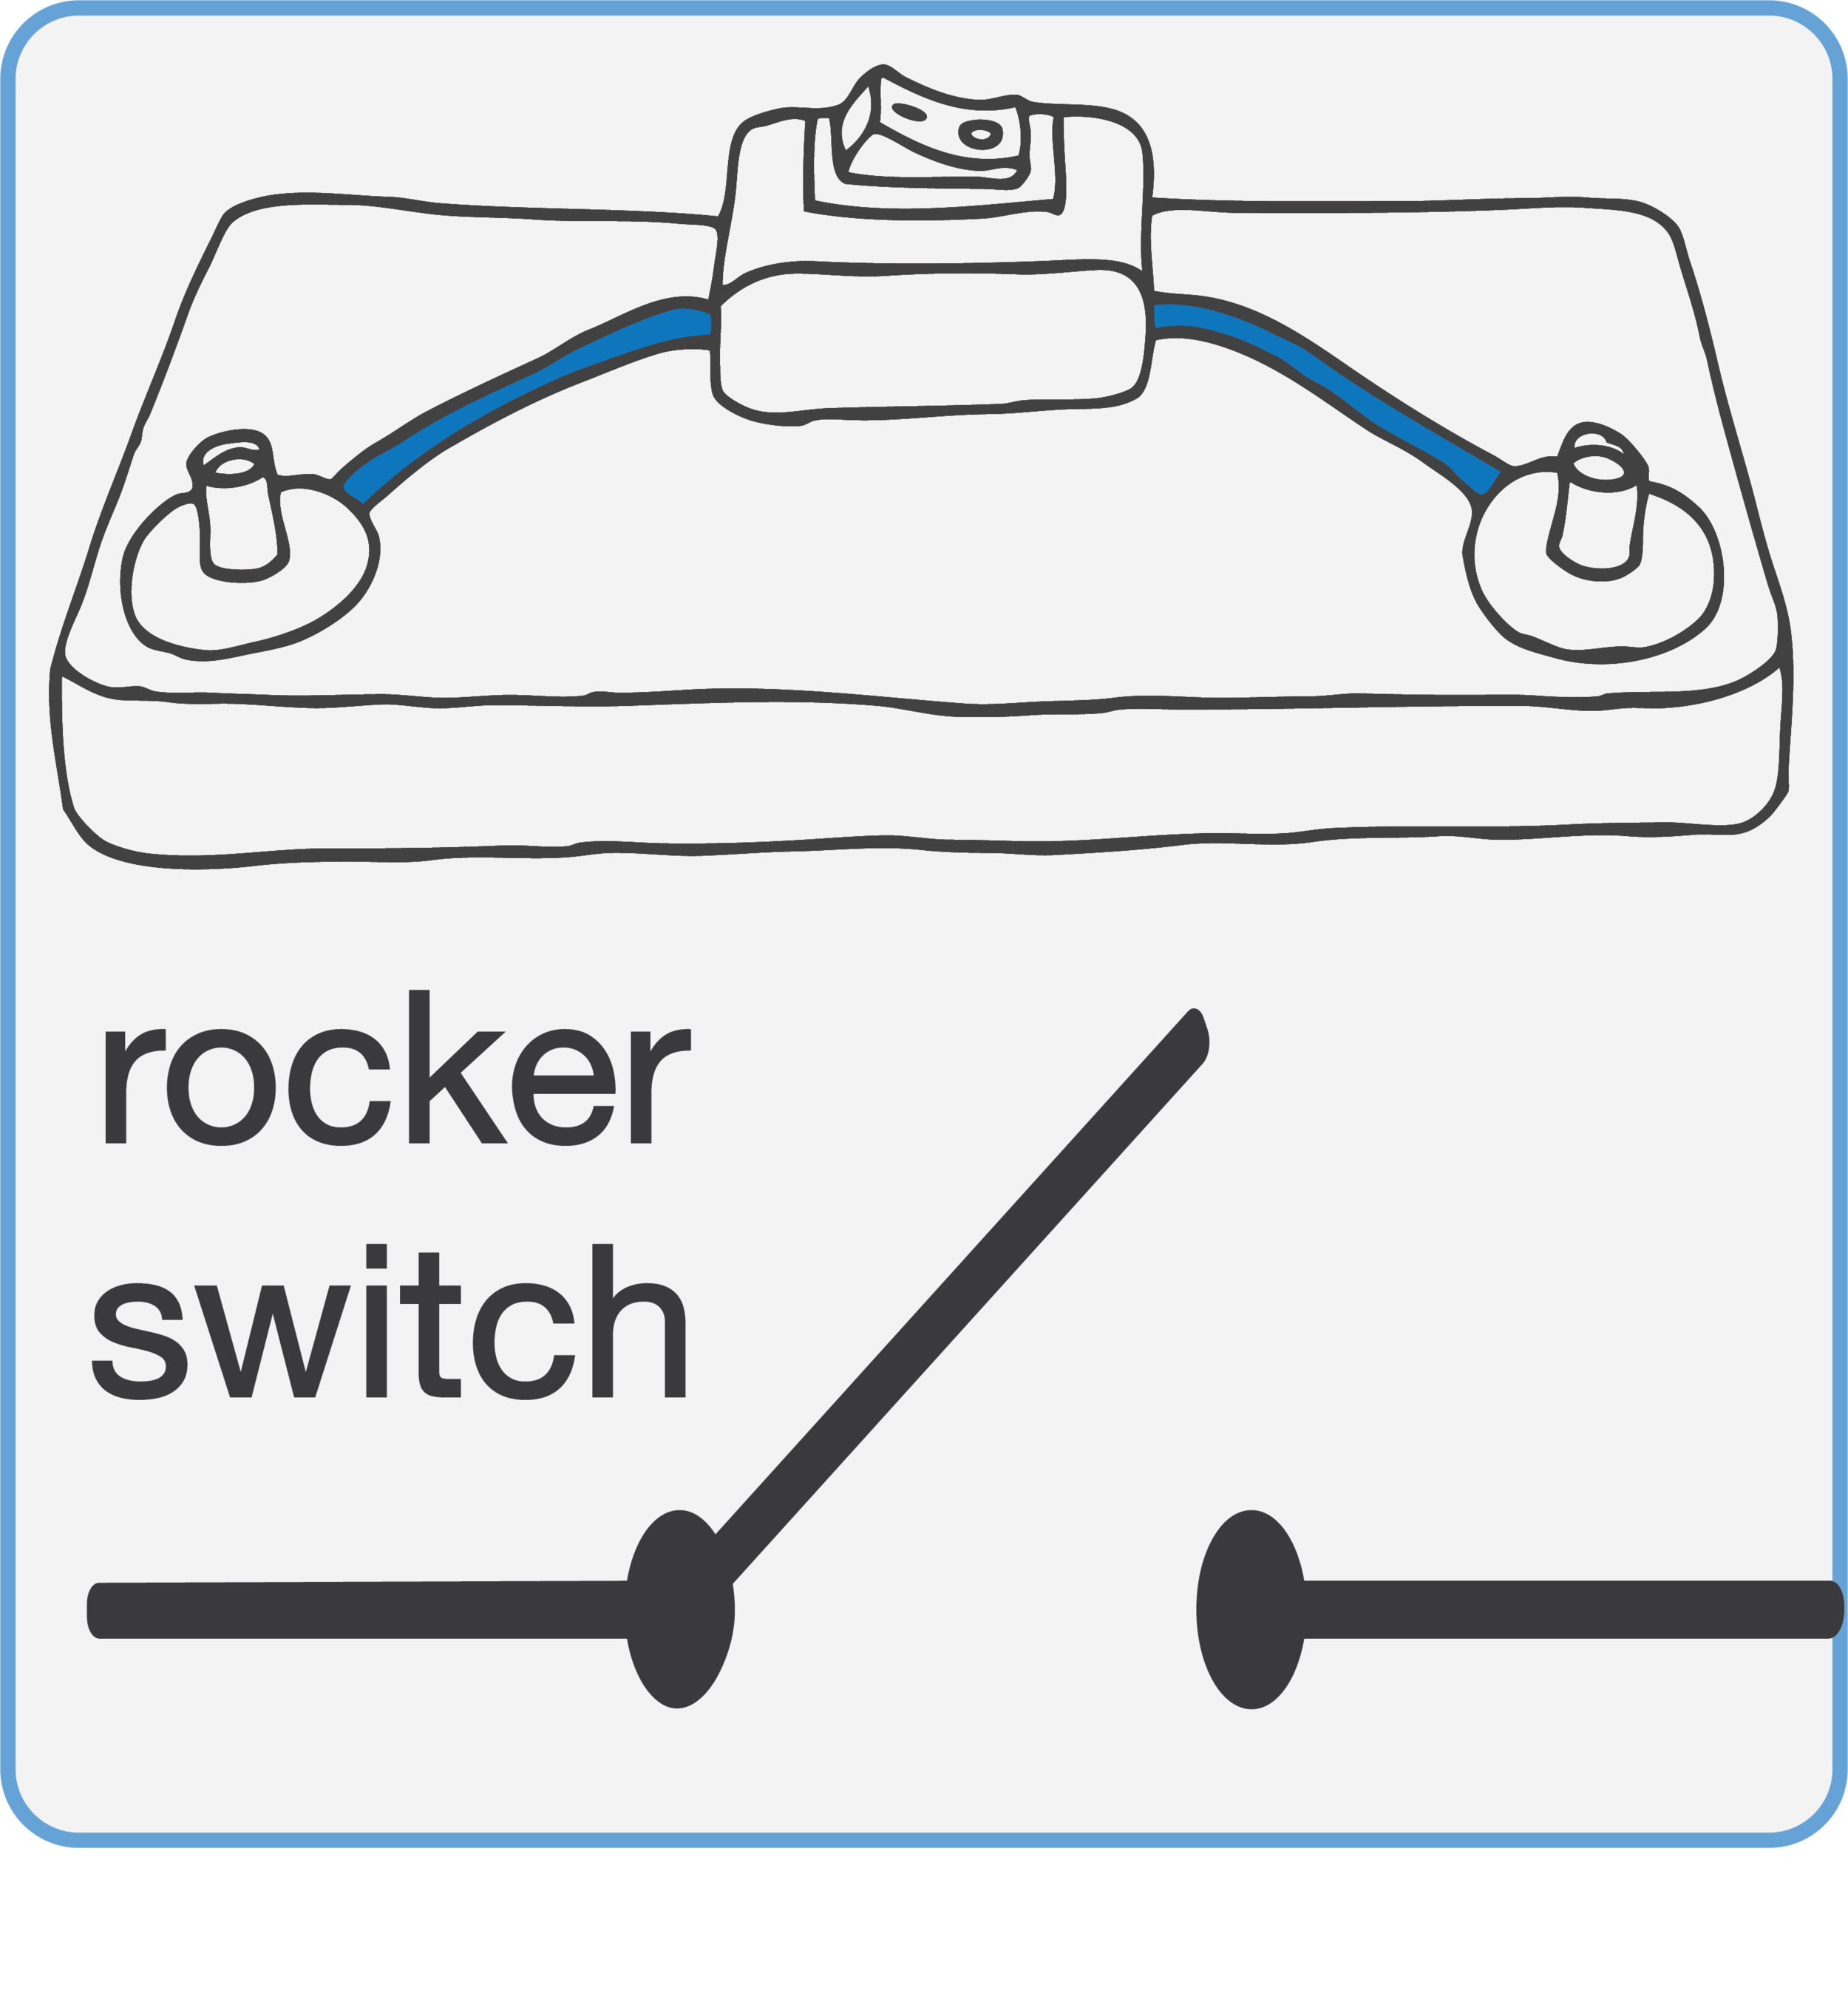 rocker-schematic.png